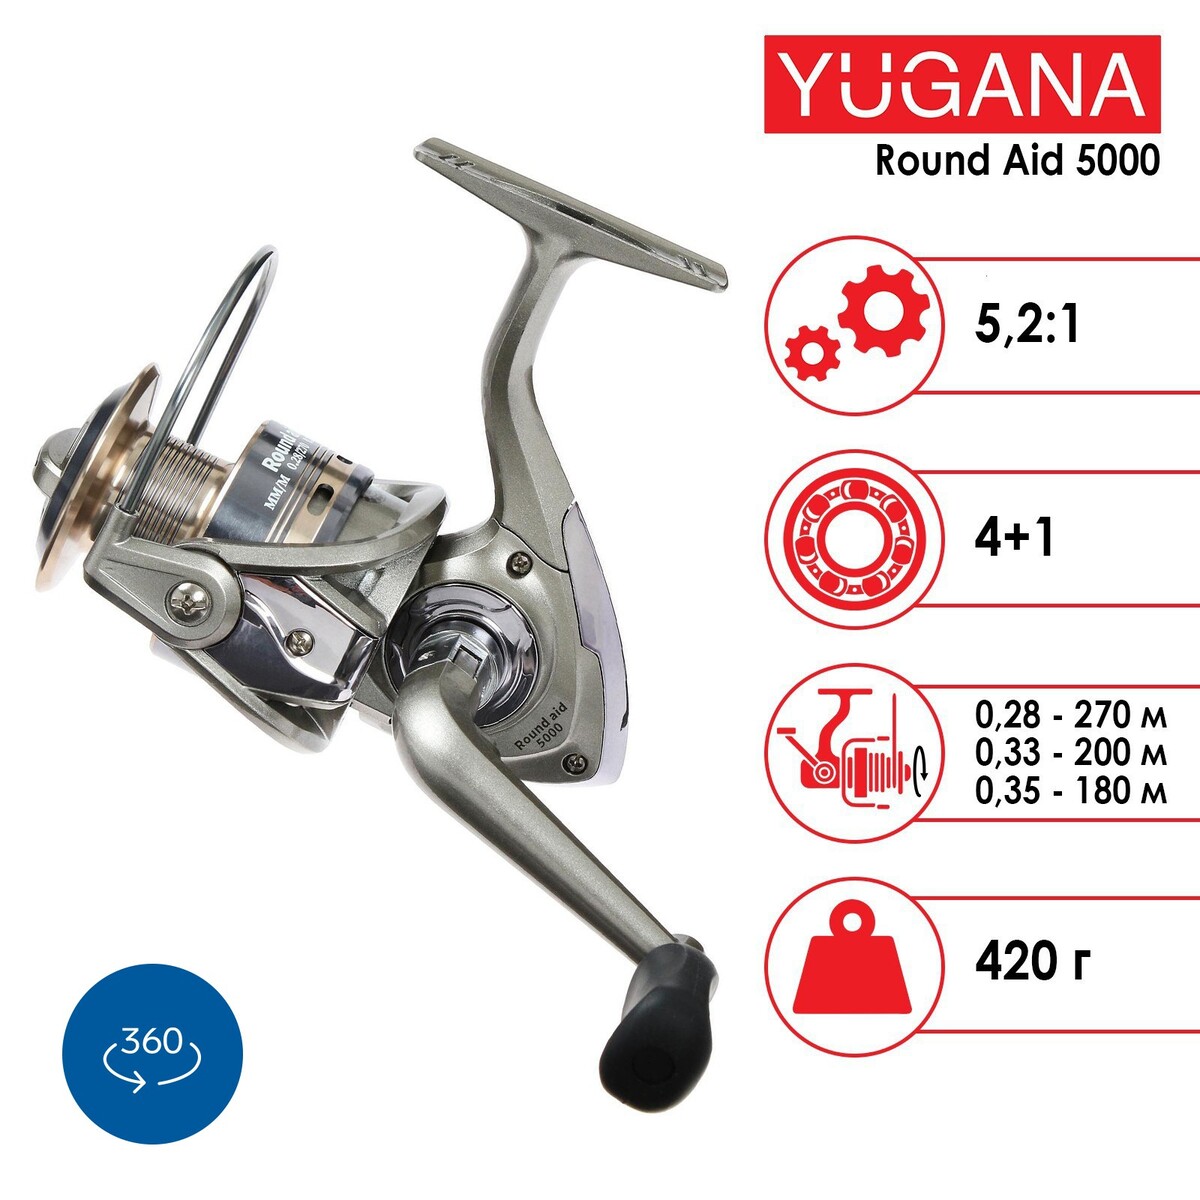  yugana round aid 5000 4+1 , 5.2:1